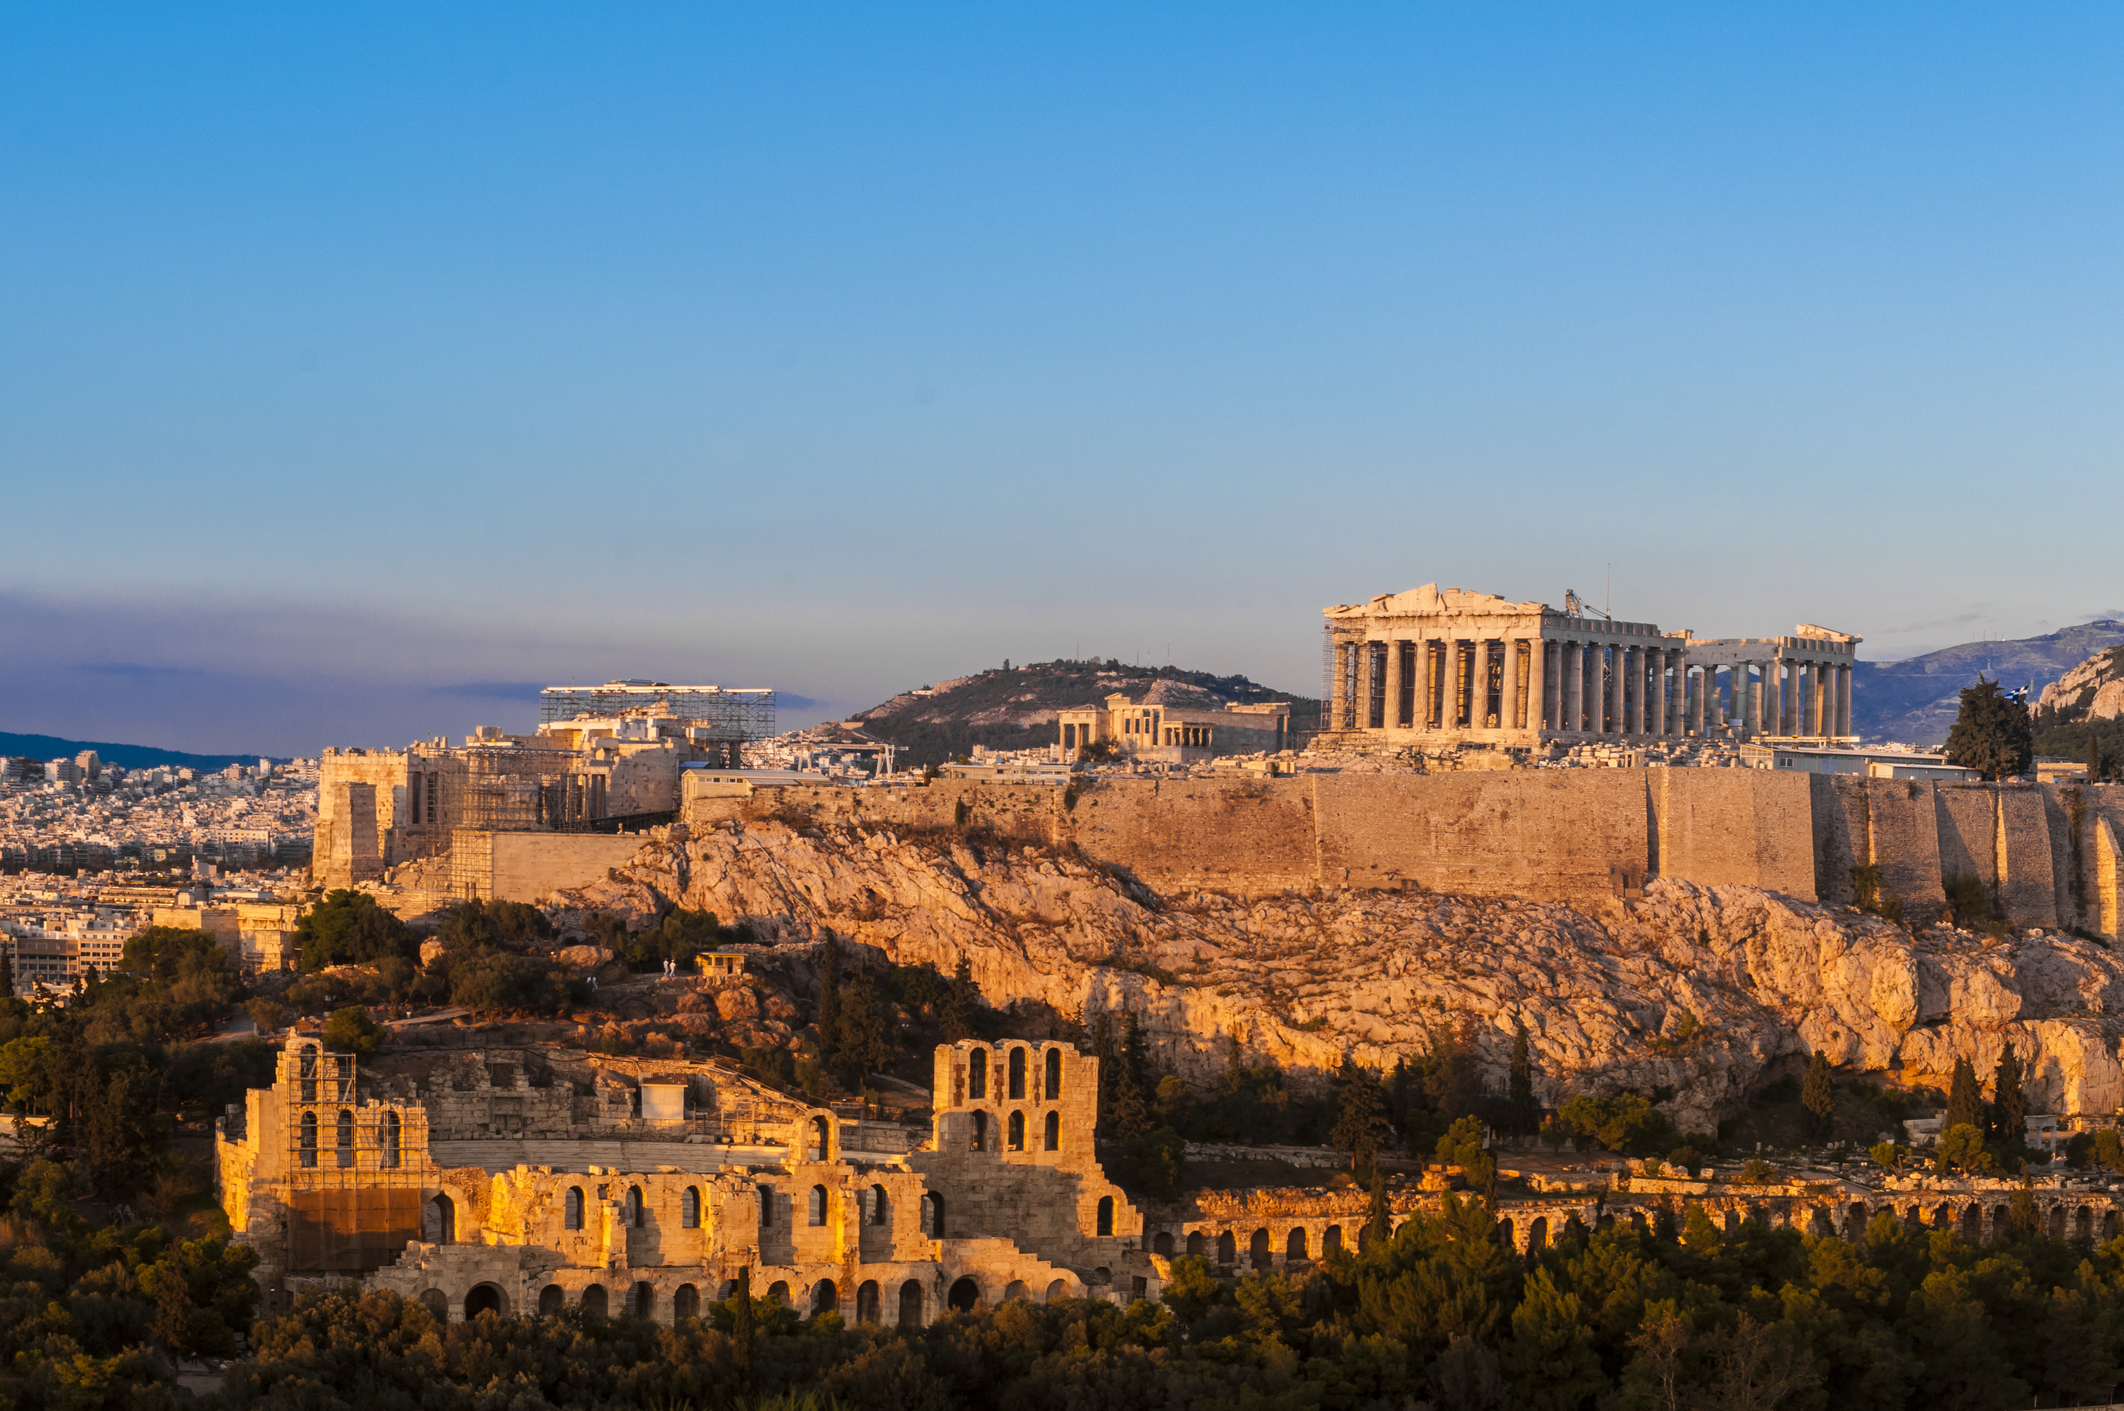 Vue du rocher de l'Acropole à Athènes en Grèce, ruines de temples s